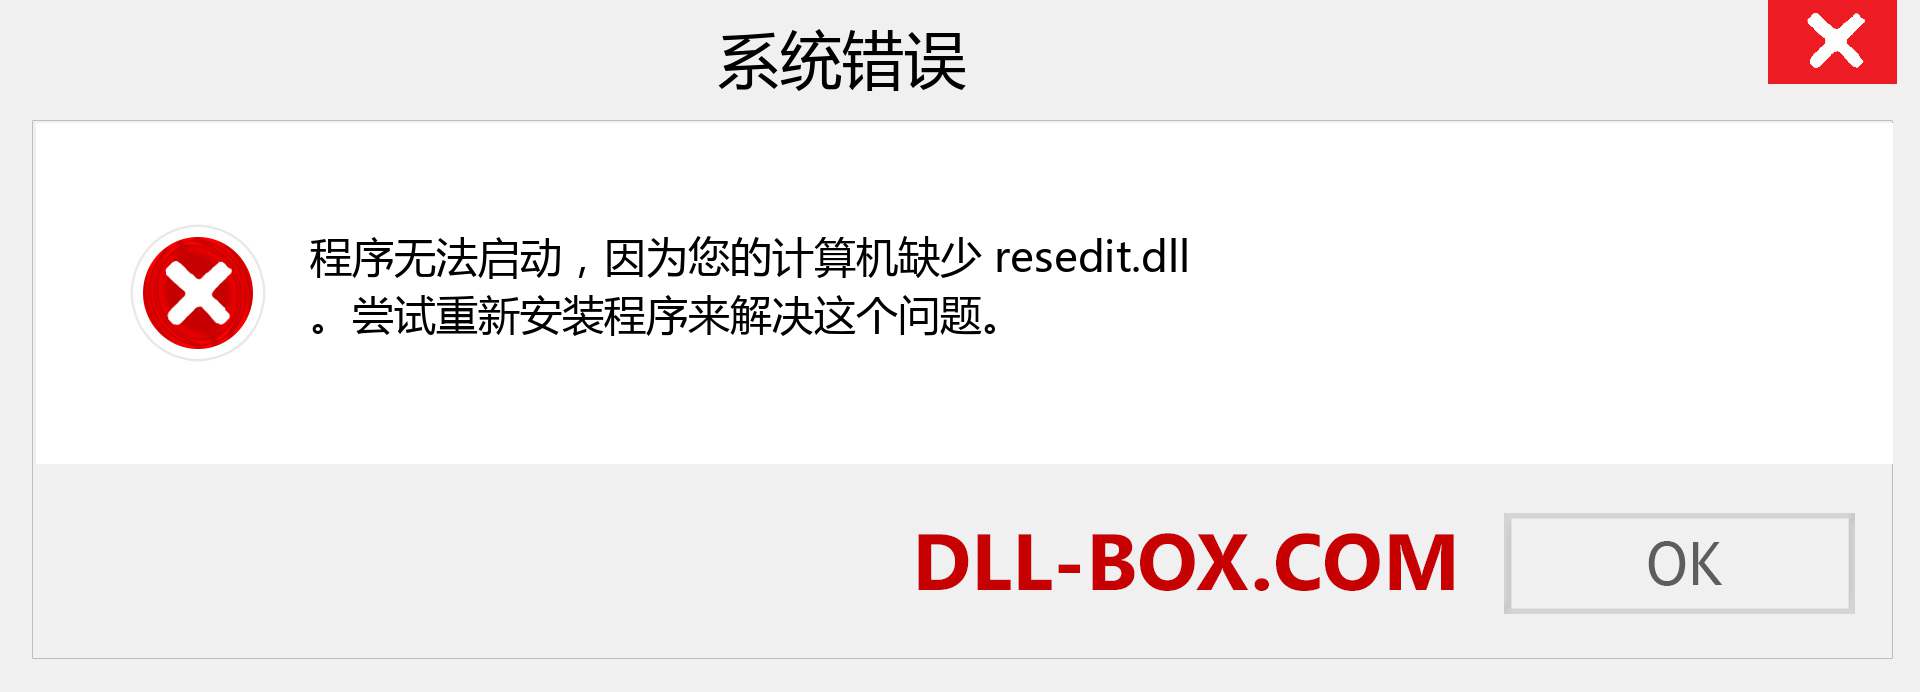 resedit.dll 文件丢失？。 适用于 Windows 7、8、10 的下载 - 修复 Windows、照片、图像上的 resedit dll 丢失错误